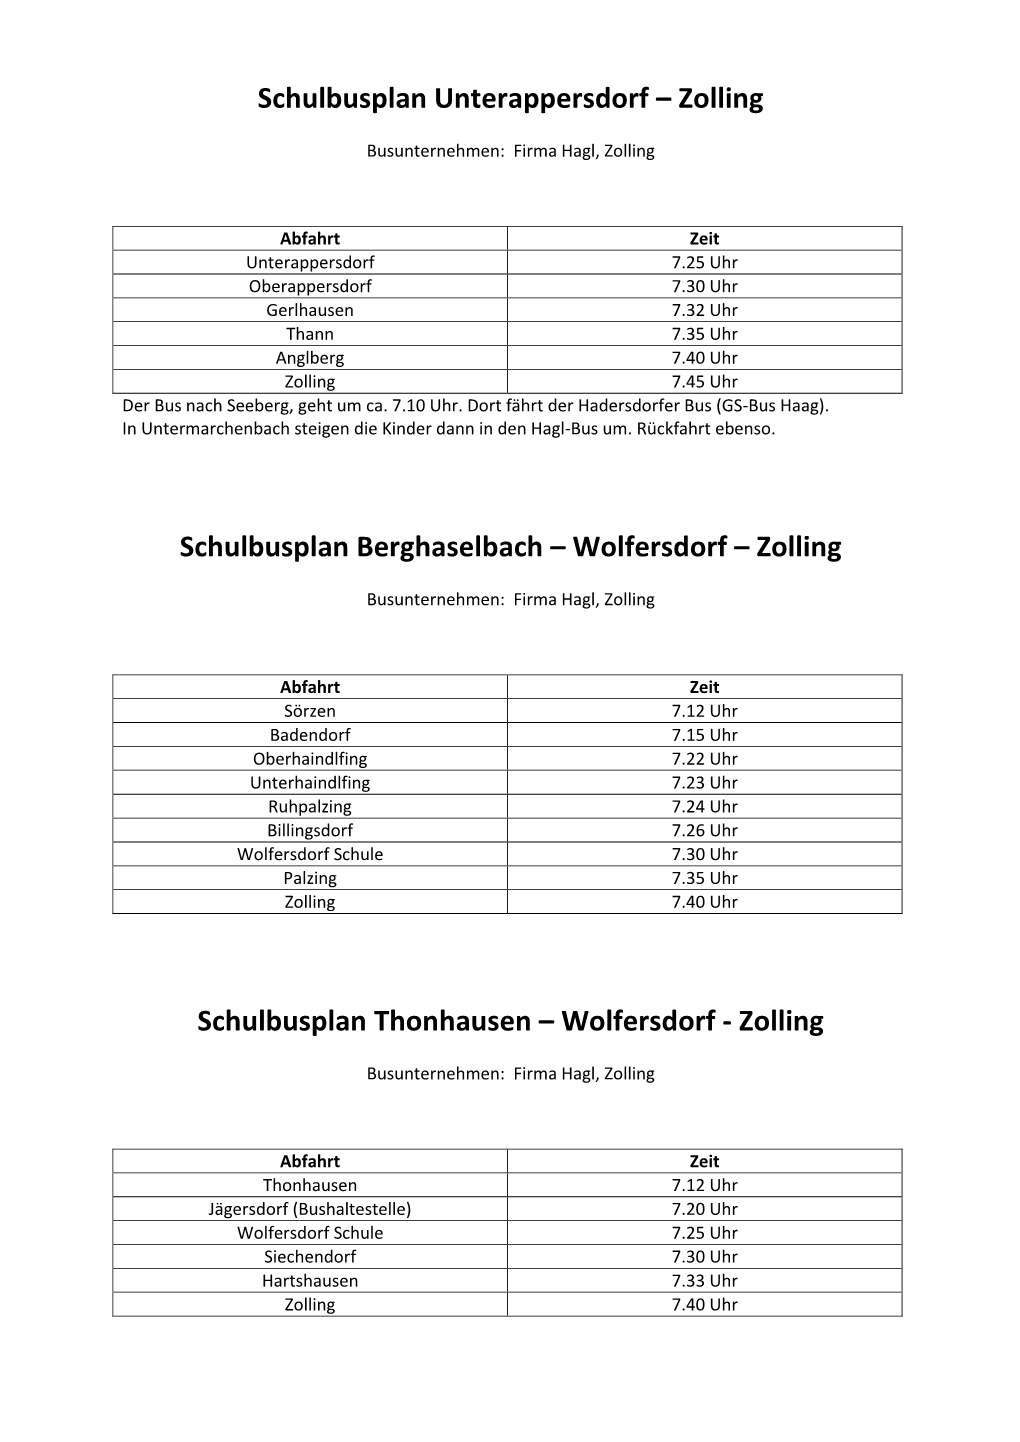 Wolfersdorf – Zolling Schulbusplan Thonhausen – Wolf